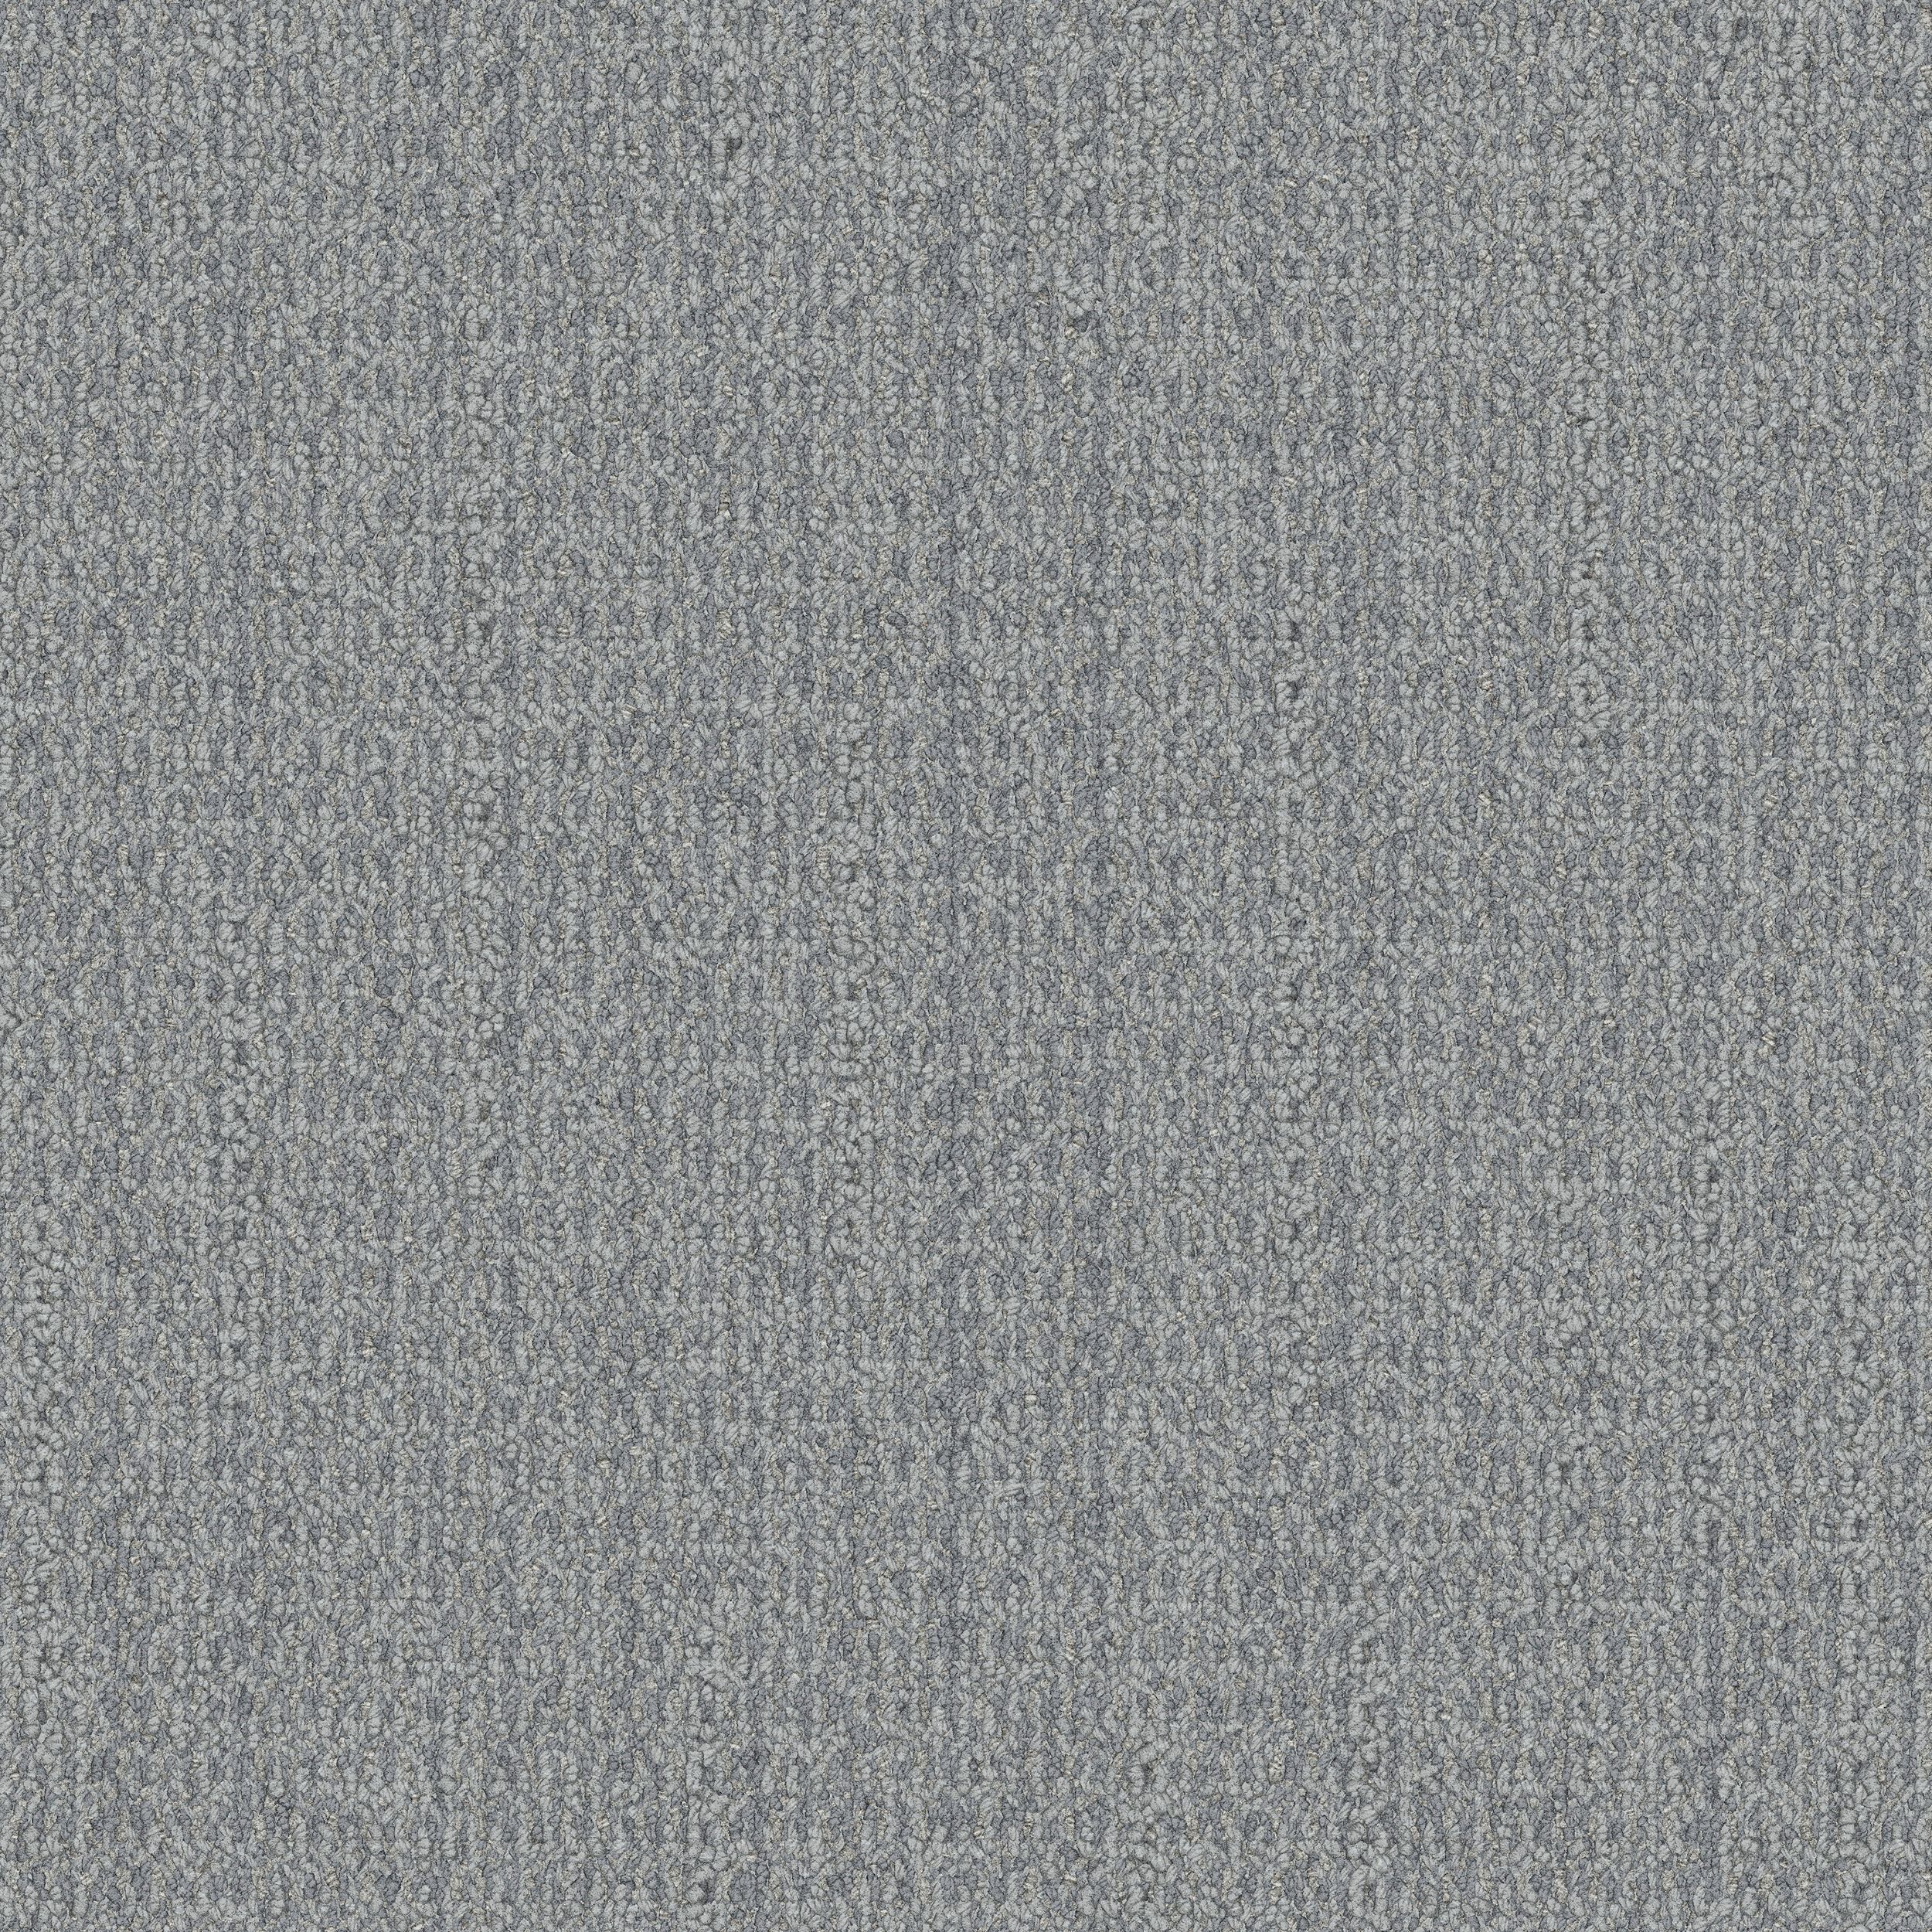 WG100 Carpet Tile In Stone afbeeldingnummer 1